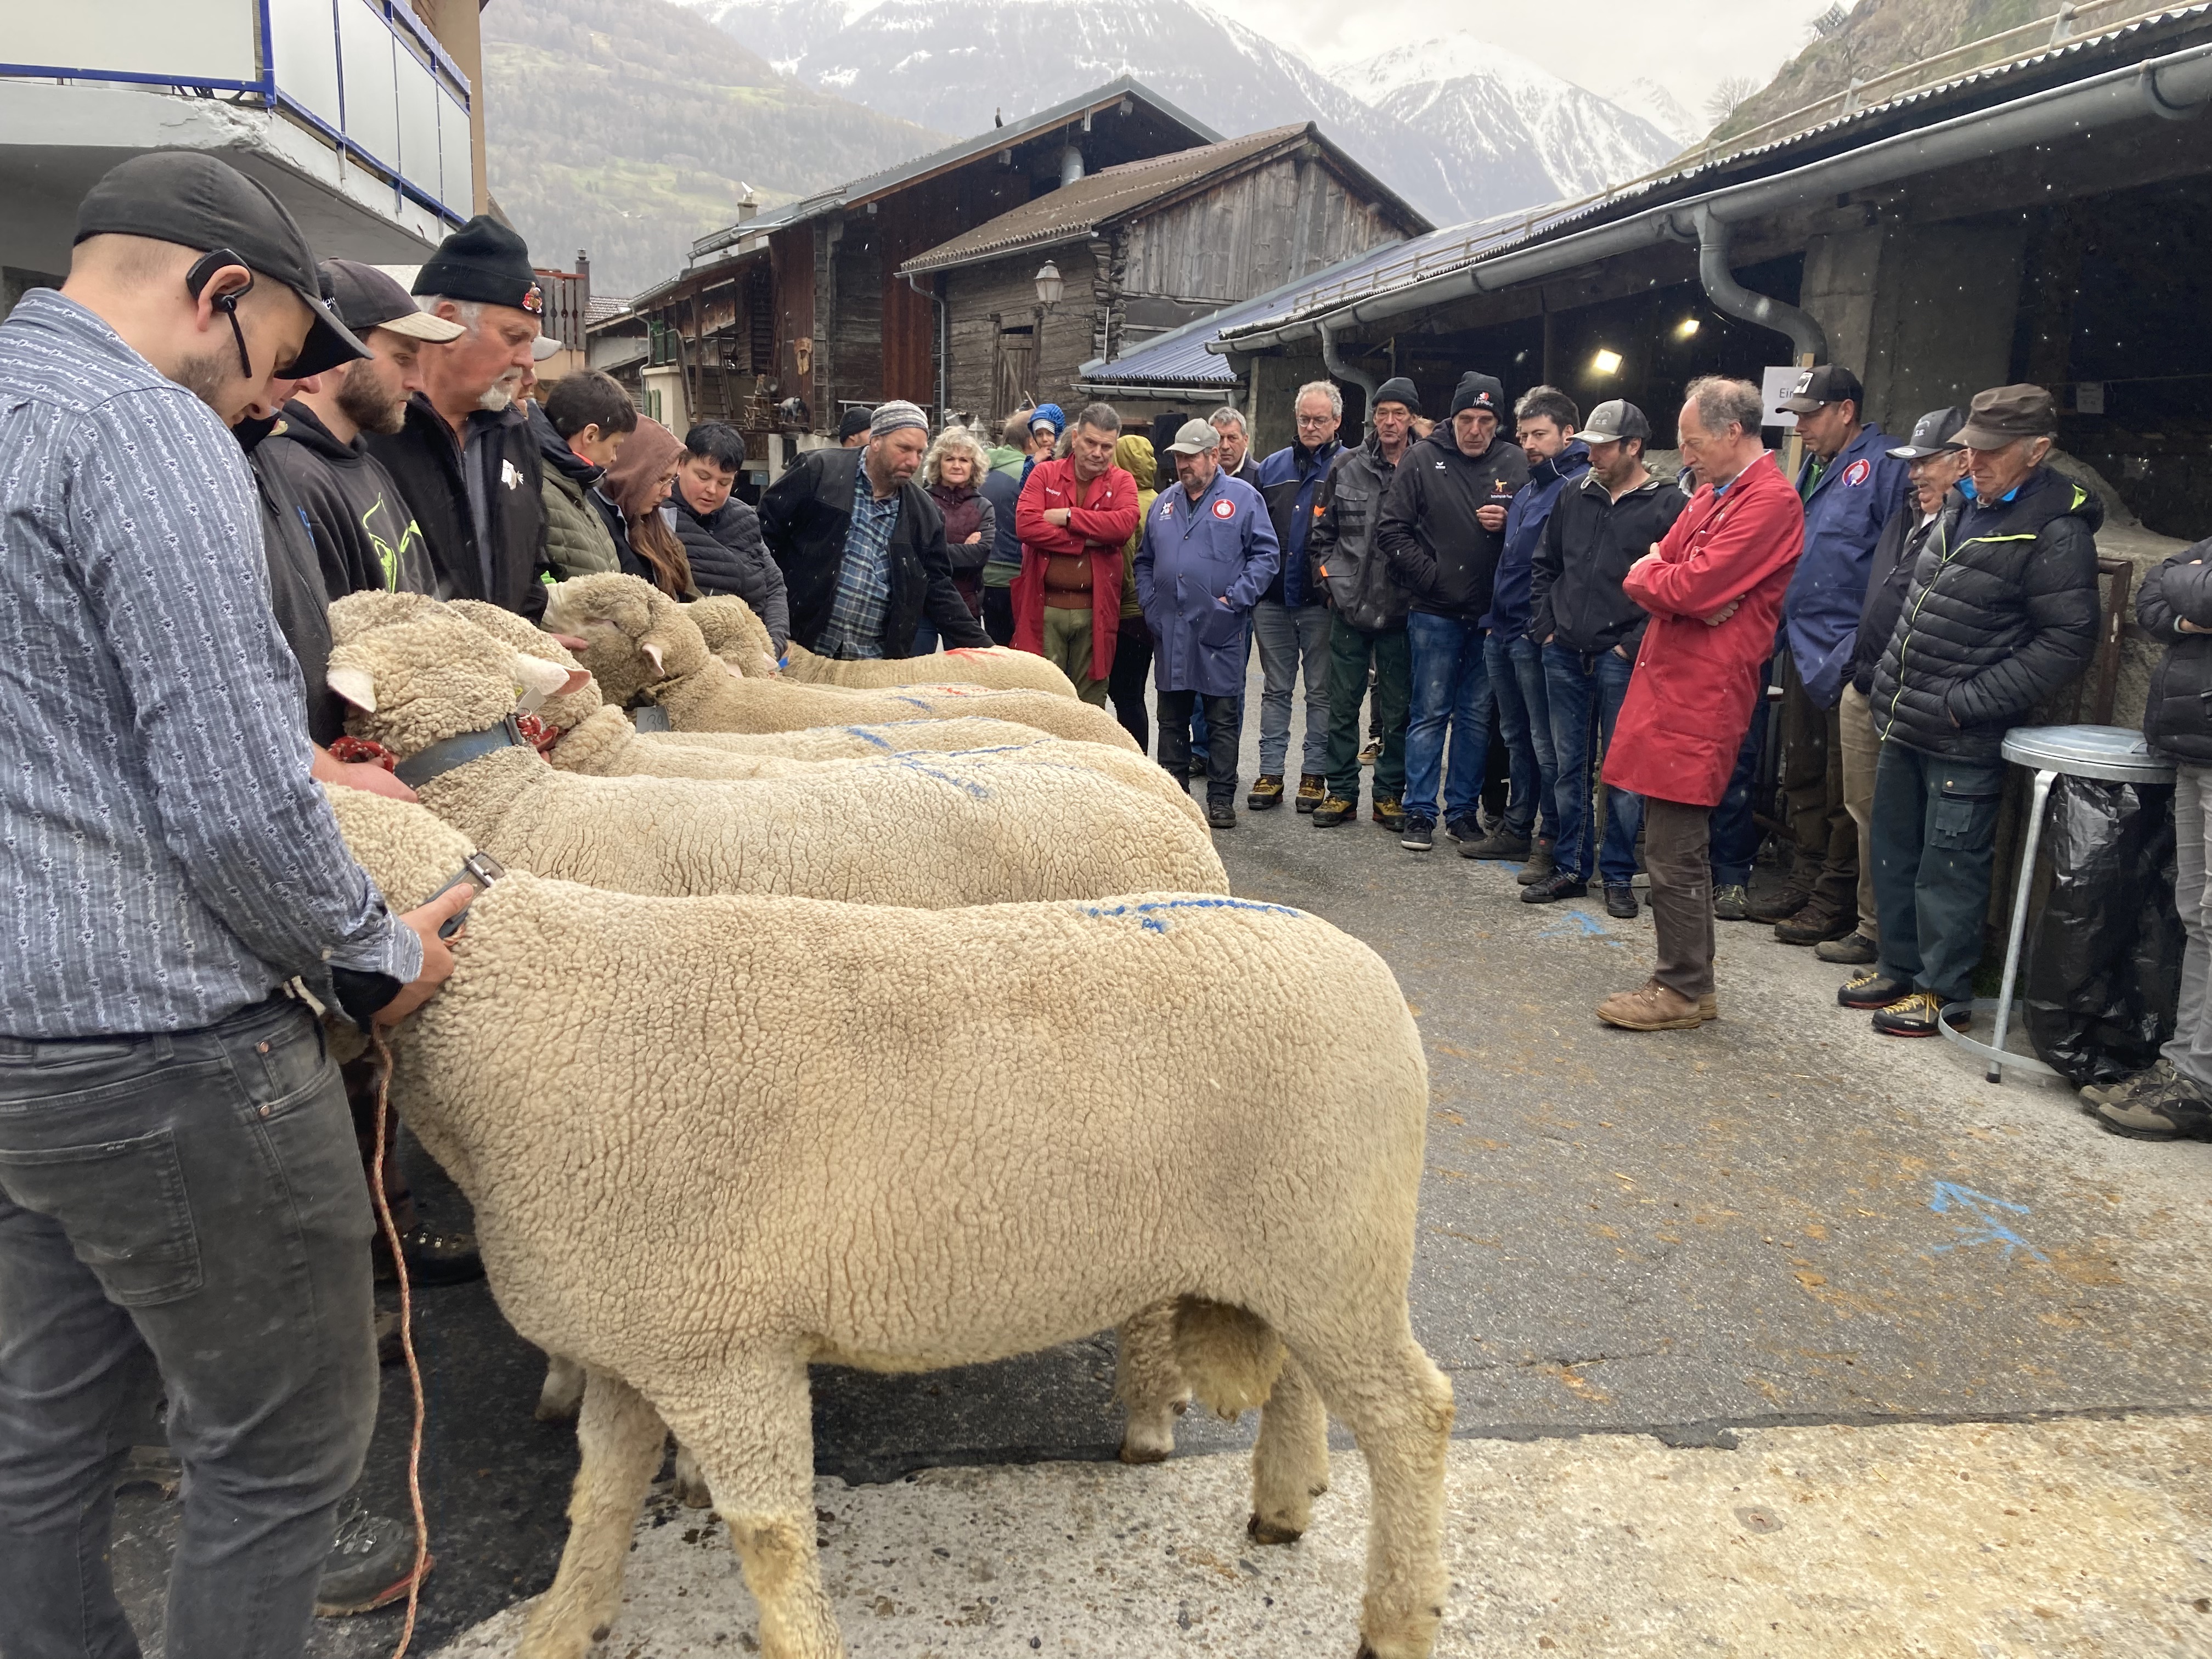 对于养羊的人来说，白羊集市这一天是一个盛大的节日，对于观众来说也是。